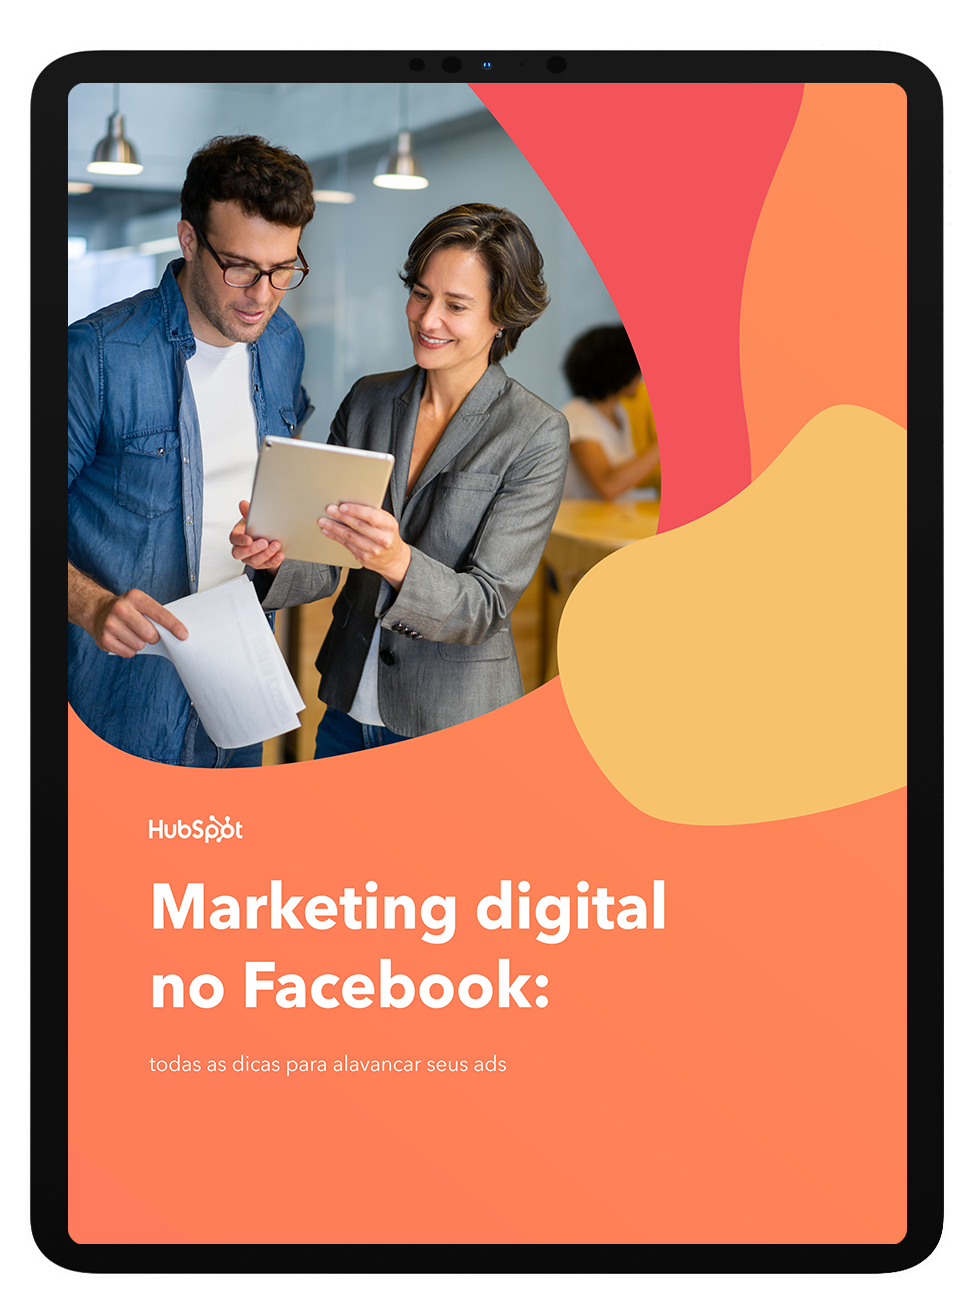 Mockup_Marketing digital no Facebook copy